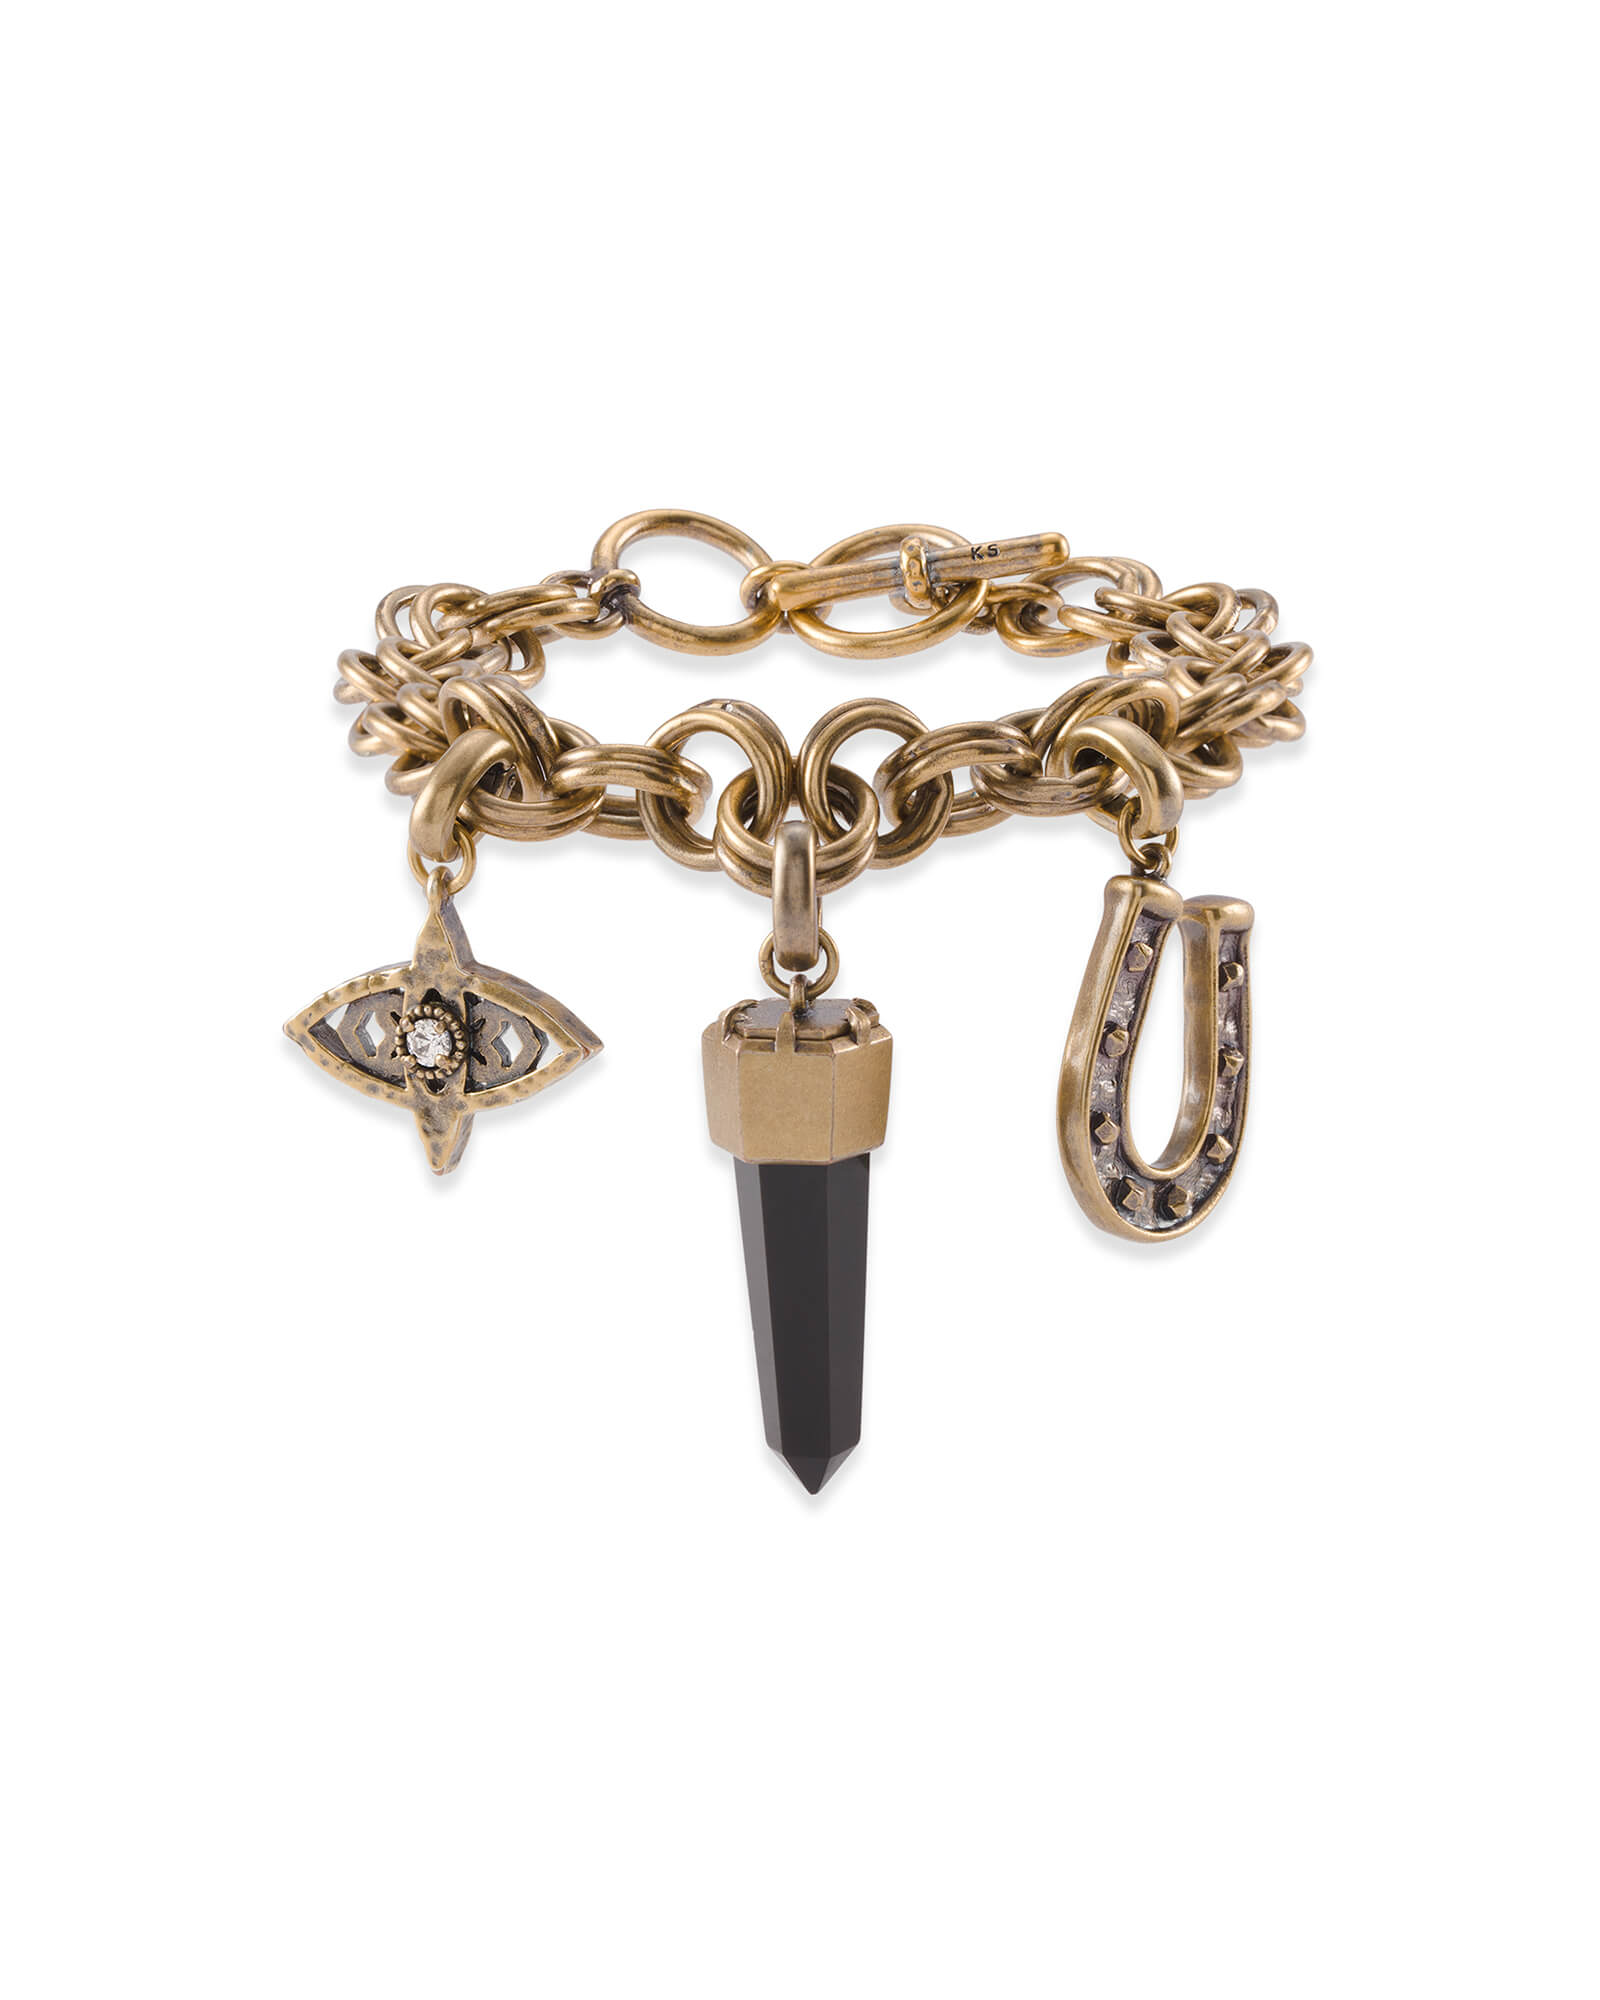 Protection Charm Bracelet Set in Vintage Gold | Kendra Scott